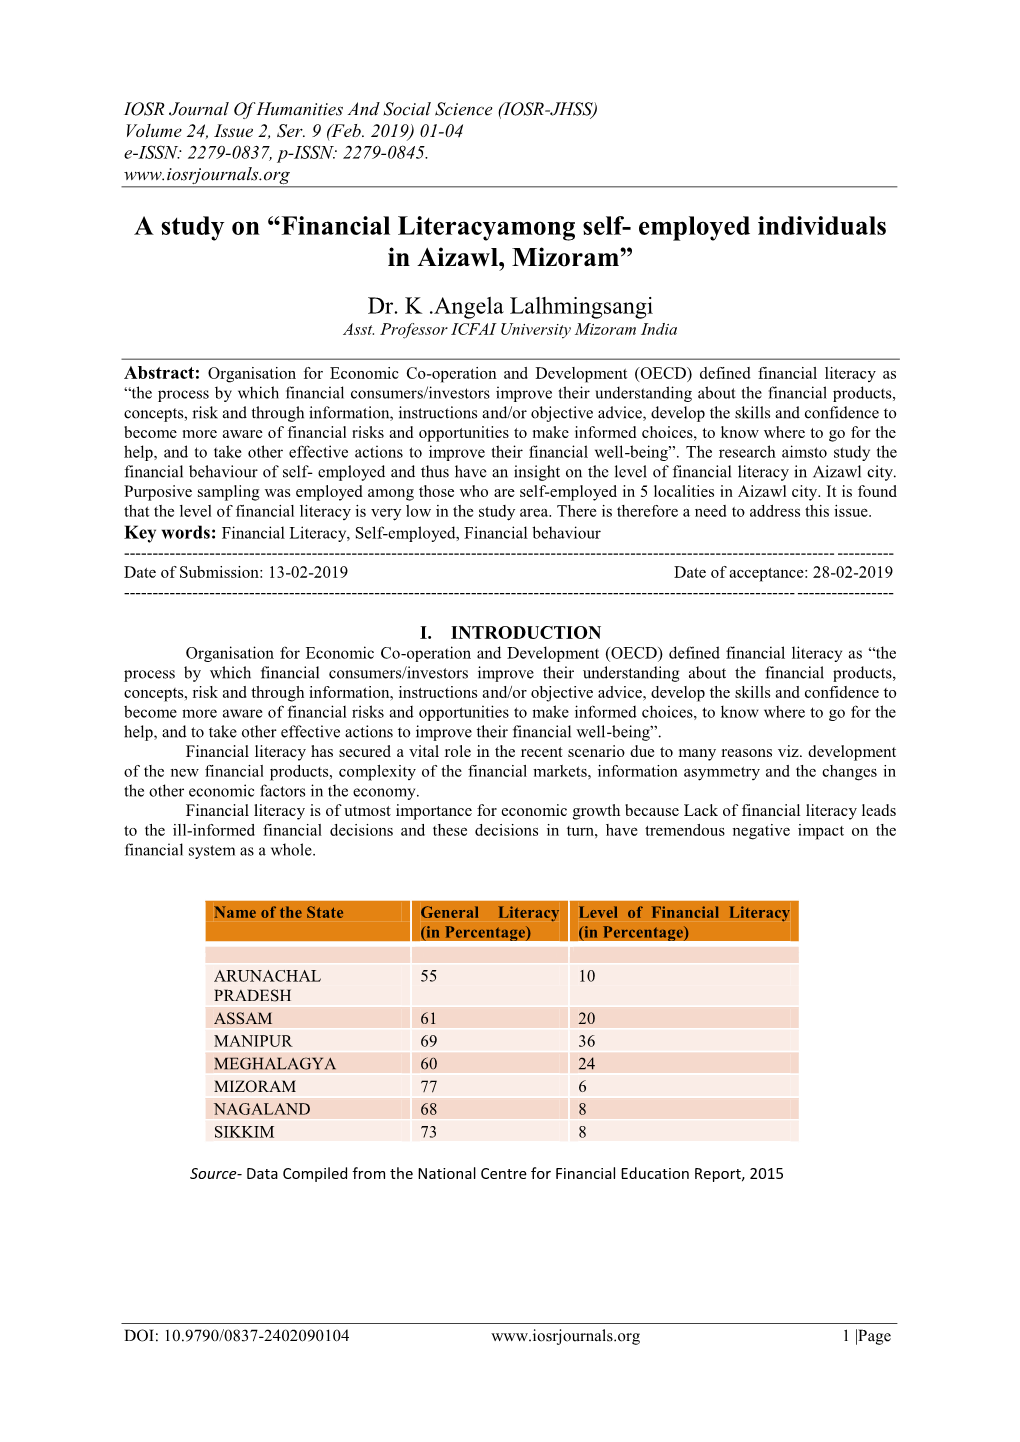 A Study on “Financial Literacyamong Self- Employed Individuals in Aizawl, Mizoram”